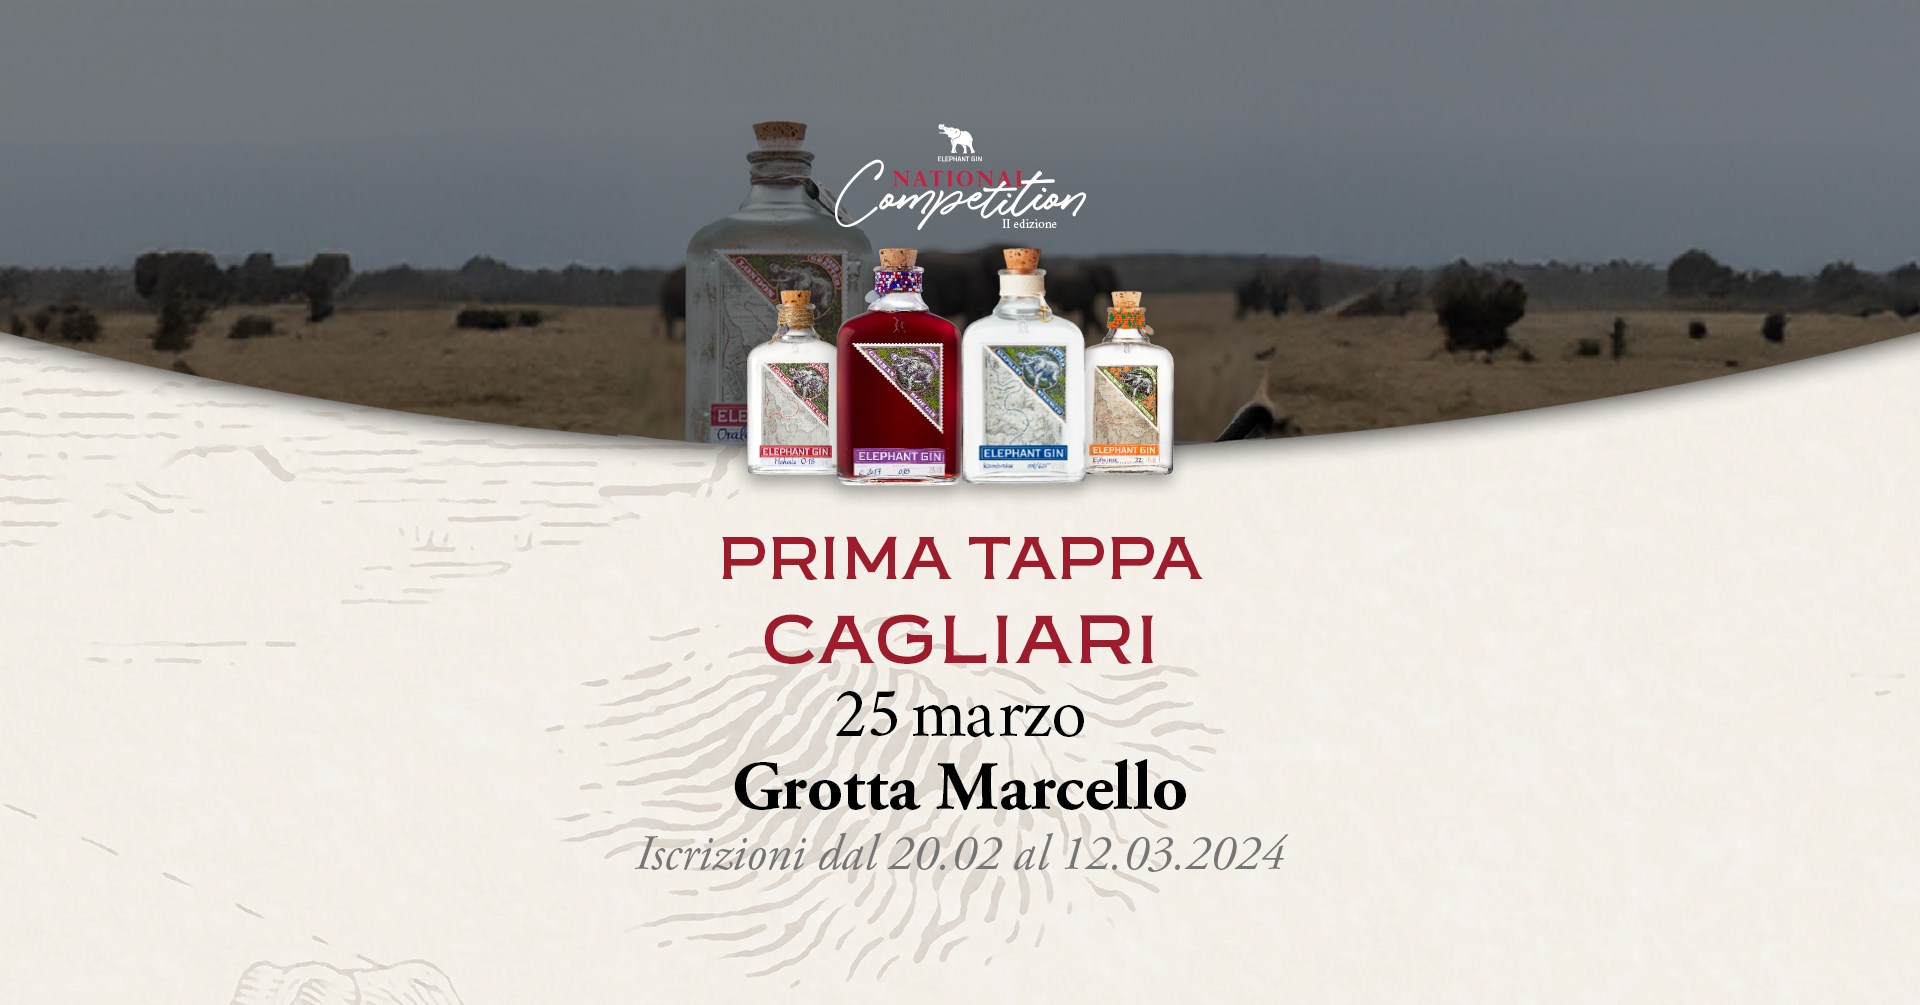 Elephant Gin Competition: aperte le iscrizioni per la tappa di Cagliari!